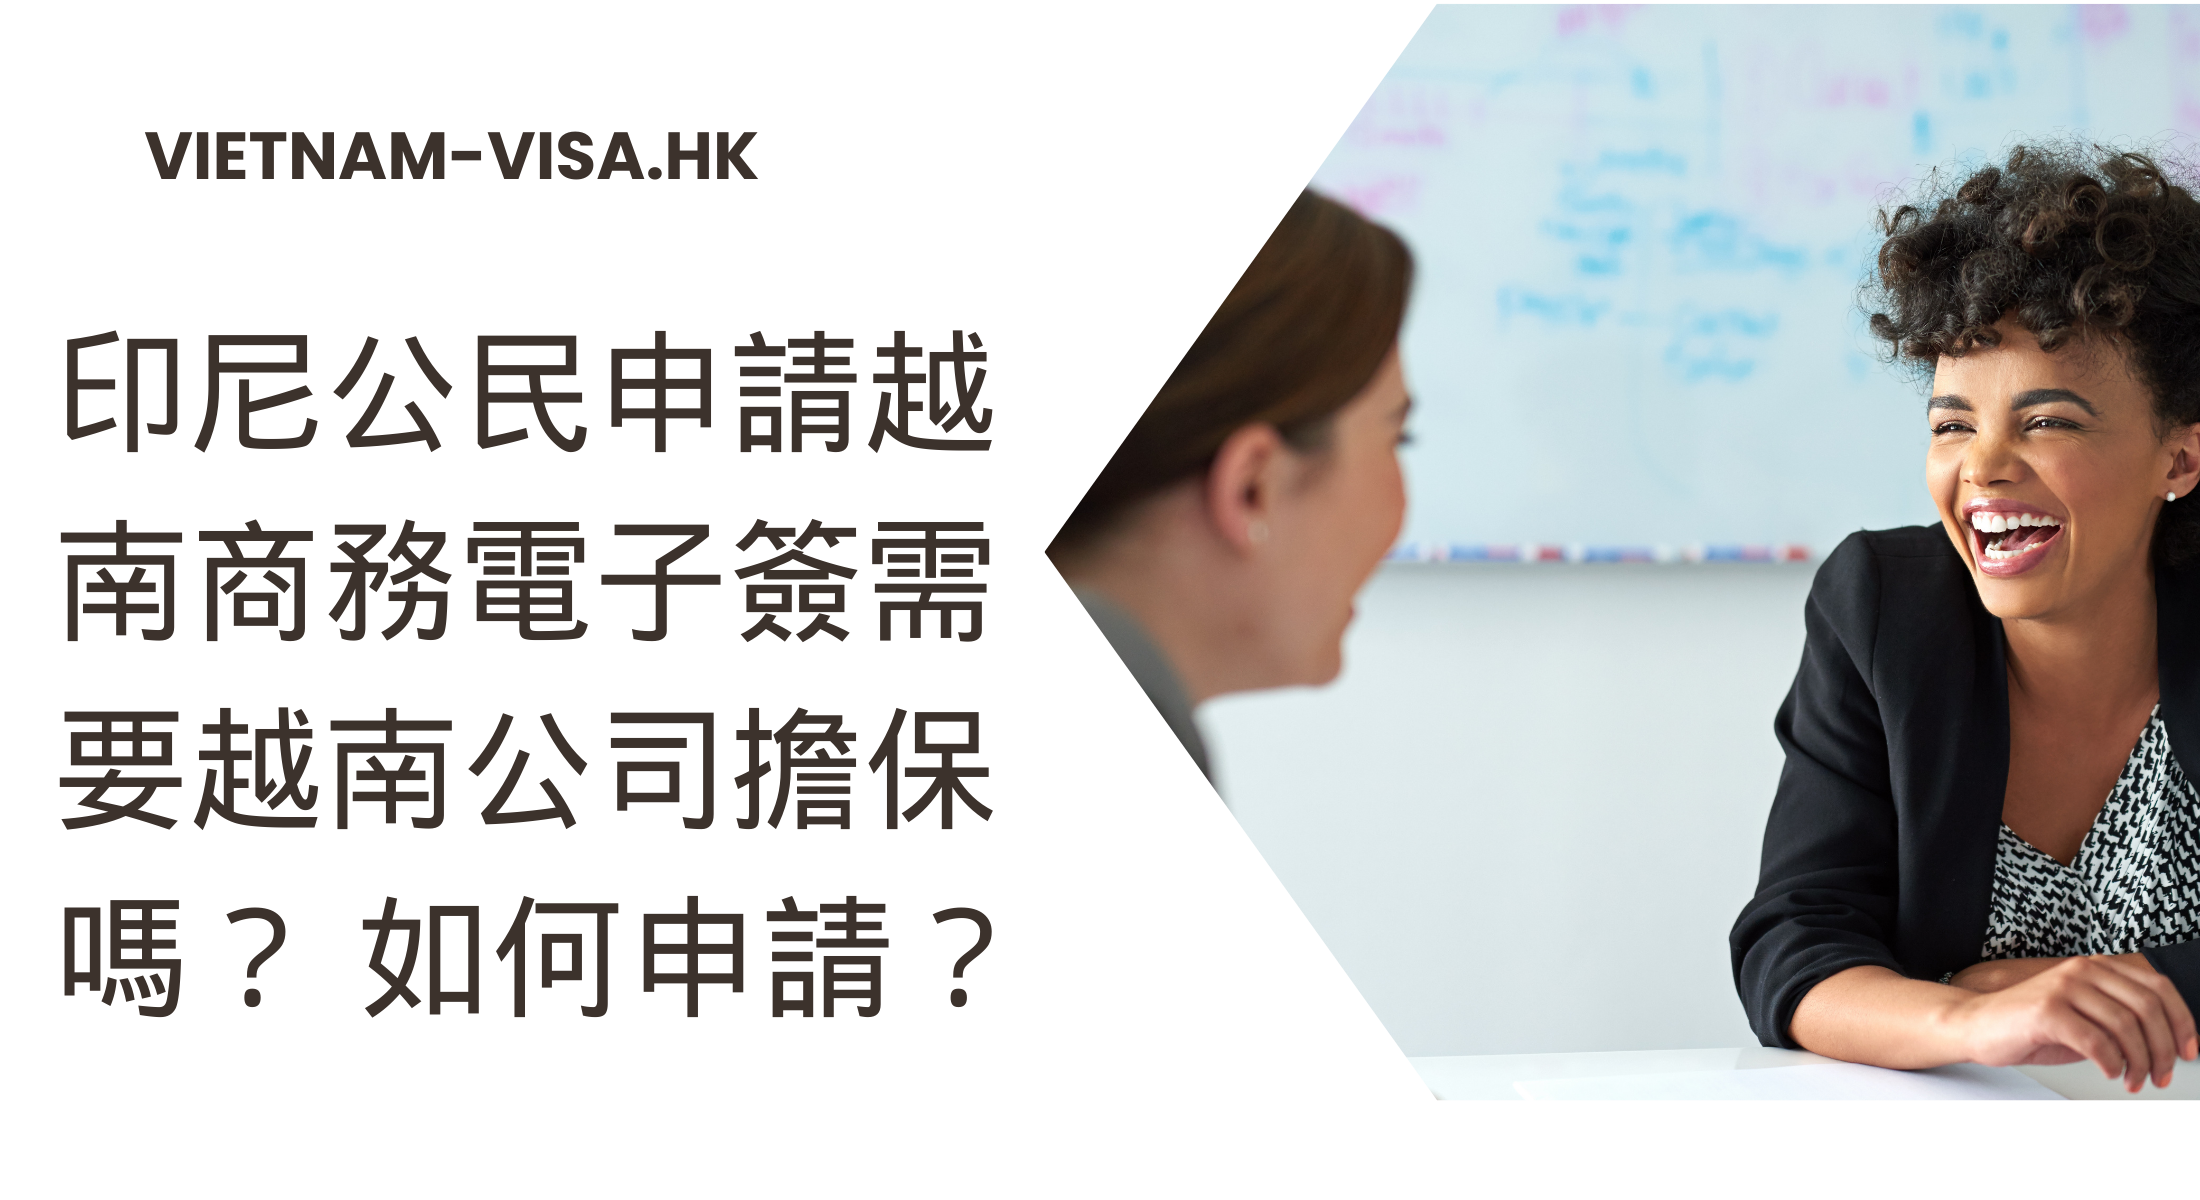 印尼公民申請越南商務電子簽需要越南公司擔保嗎？ 如何申請？